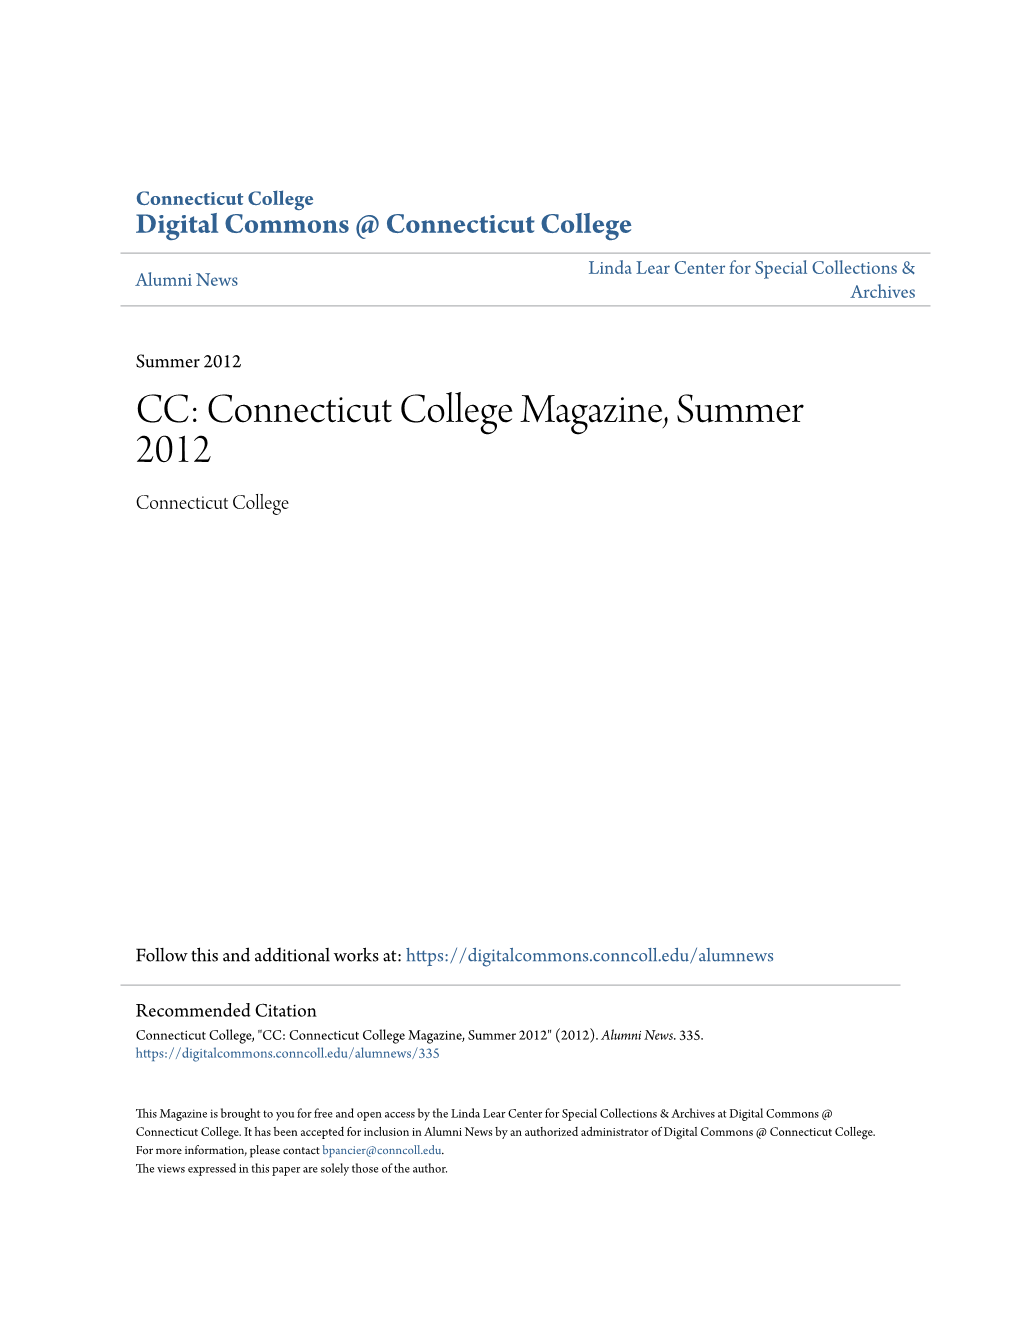 CC: Connecticut College Magazine, Summer 2012 Connecticut College